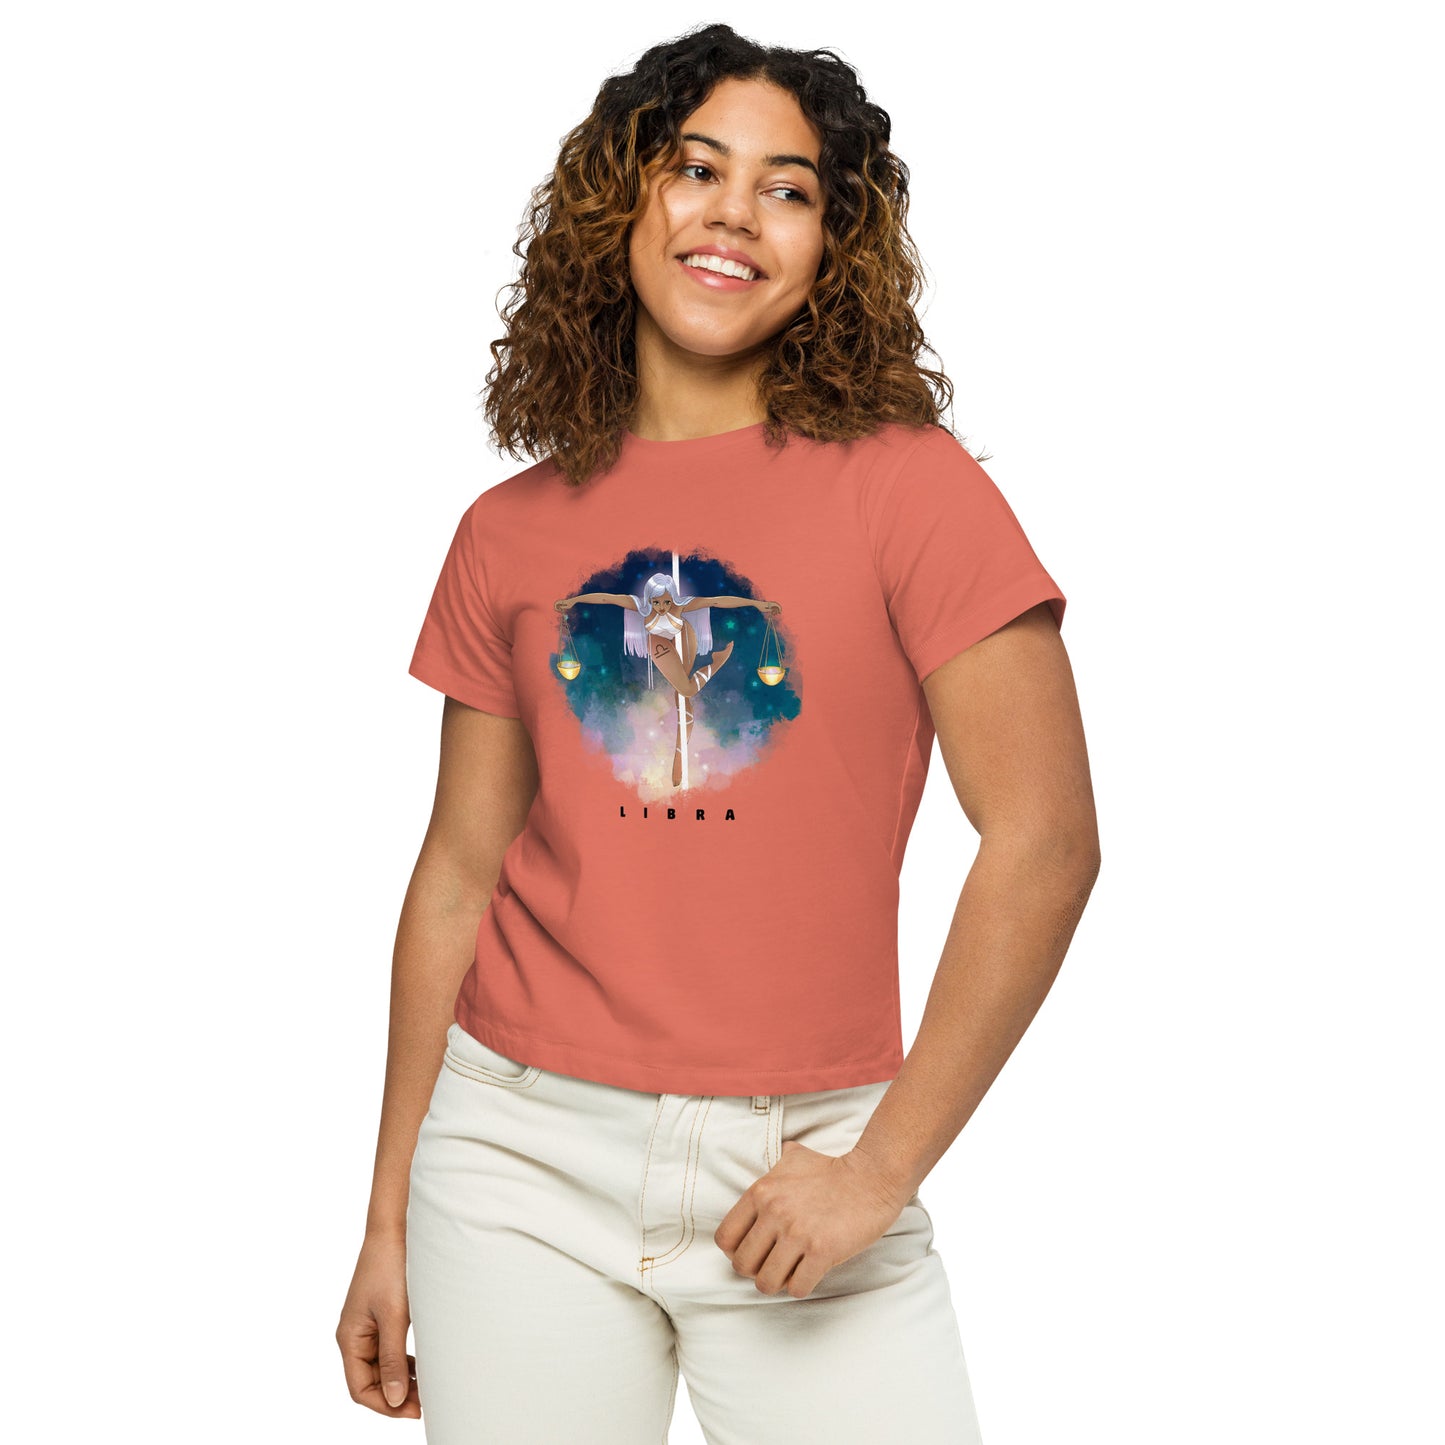 Libra - Women’s high-waisted t-shirt